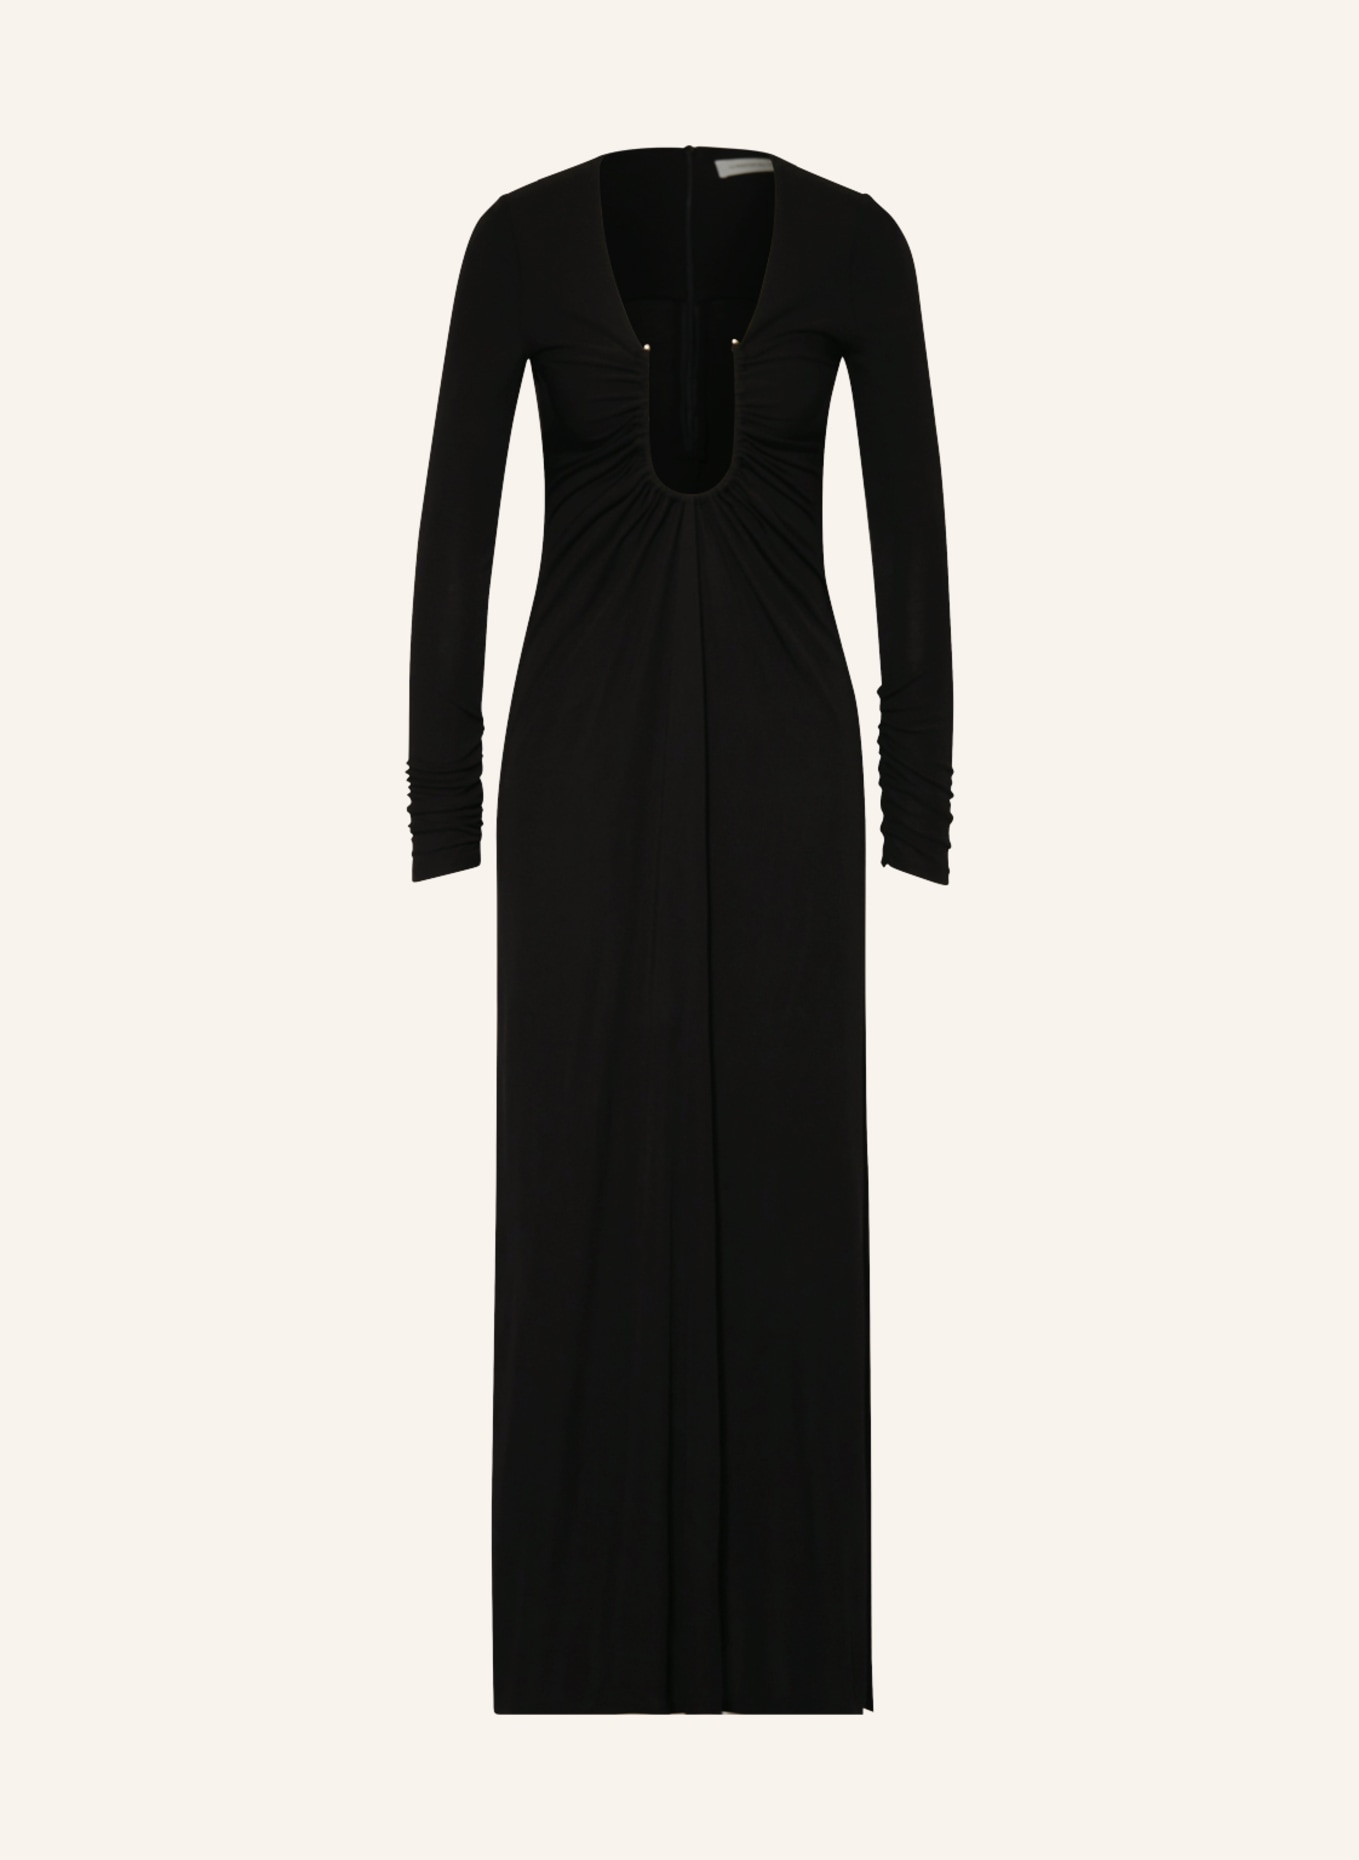 CHRISTOPHER ESBER Kleid ARCED PALM in schwarz